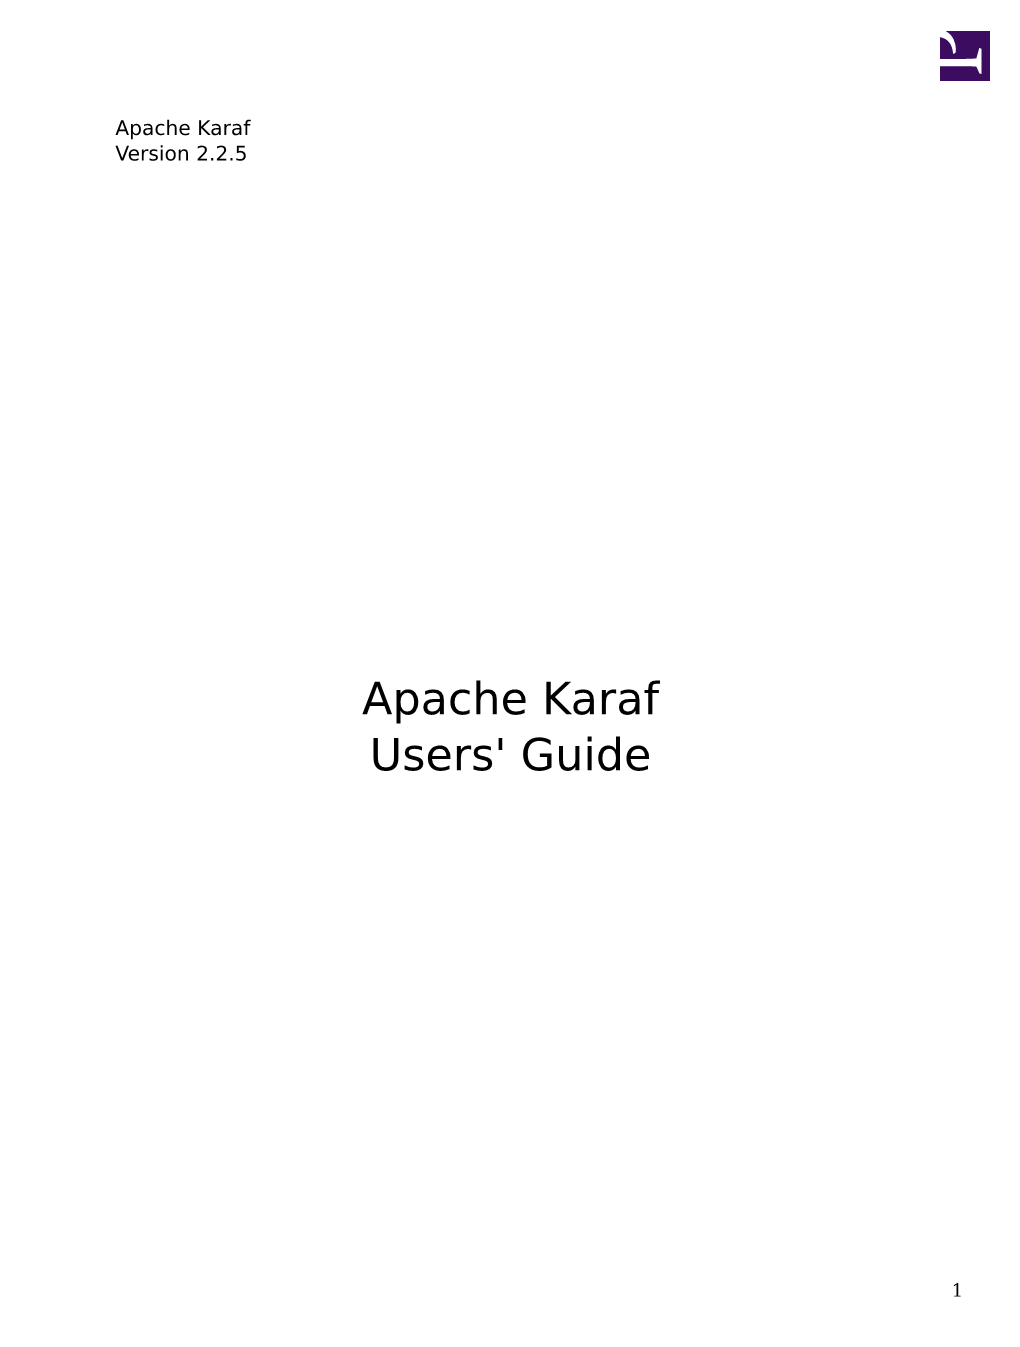 Apache Karaf ${Karaf.Version}